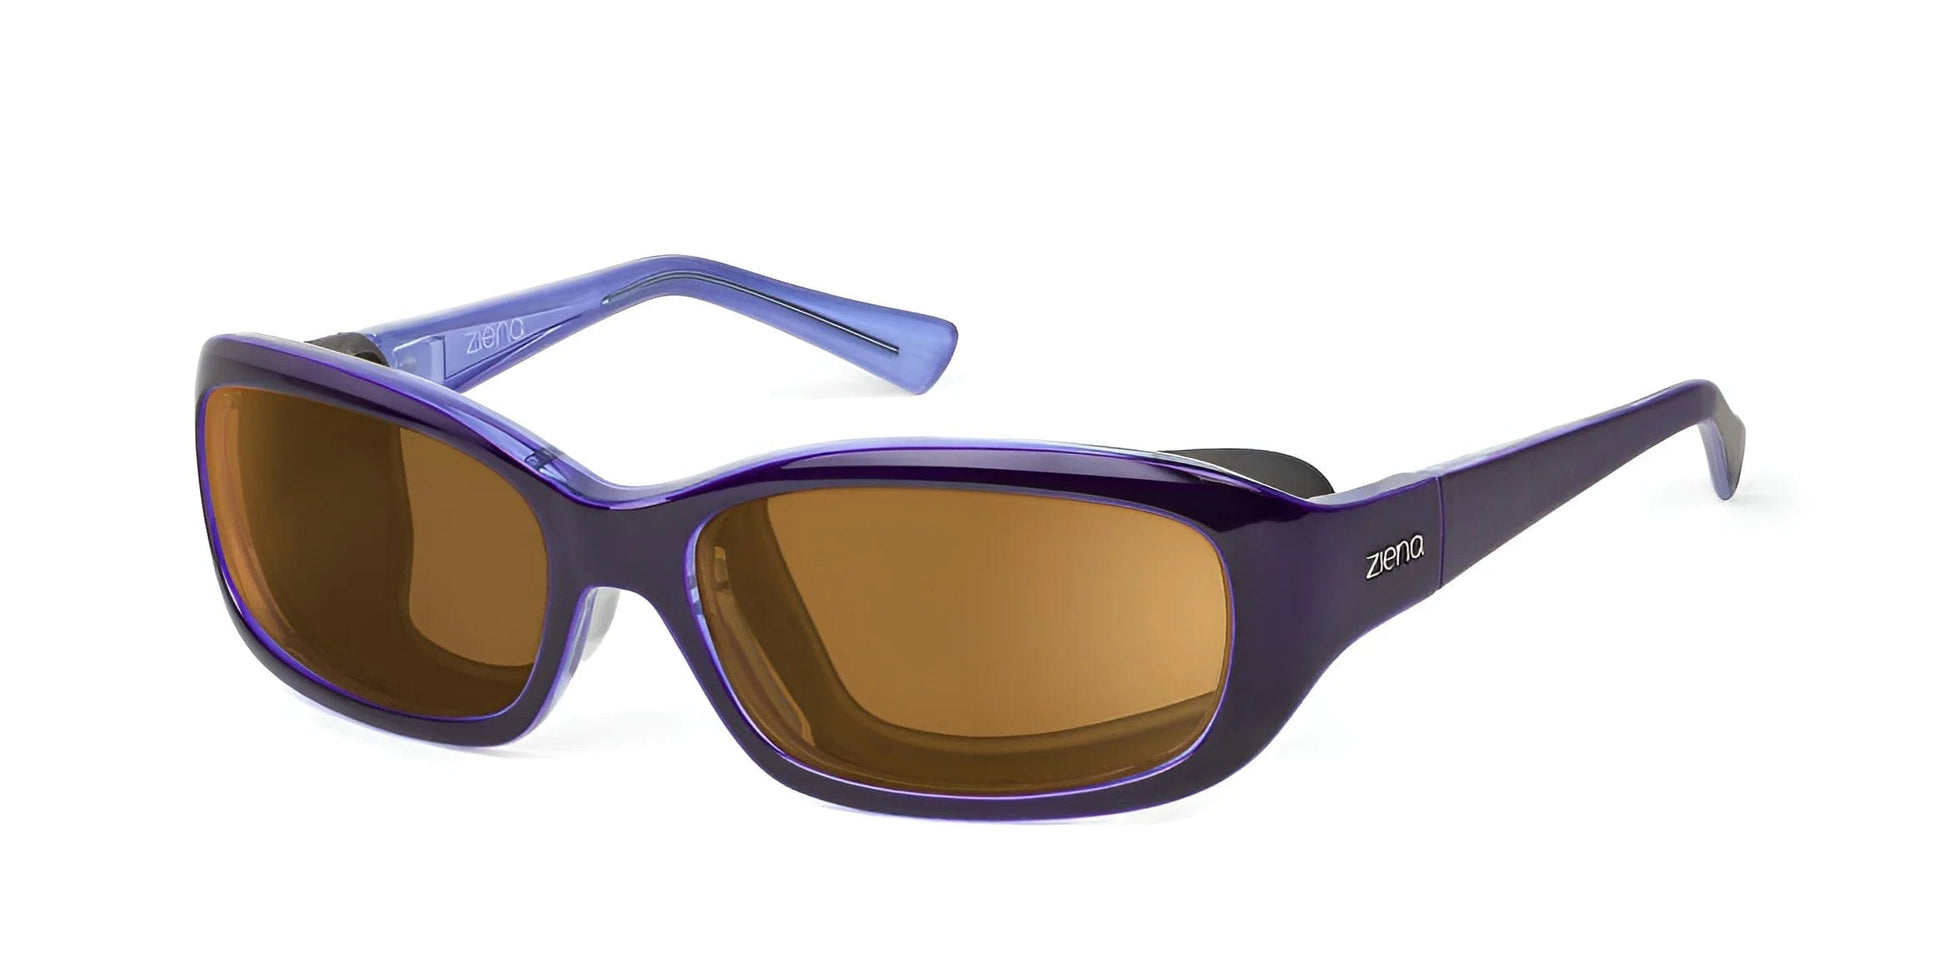 Ziena Verona Sunglasses Lilac / Polarized Copper / Black